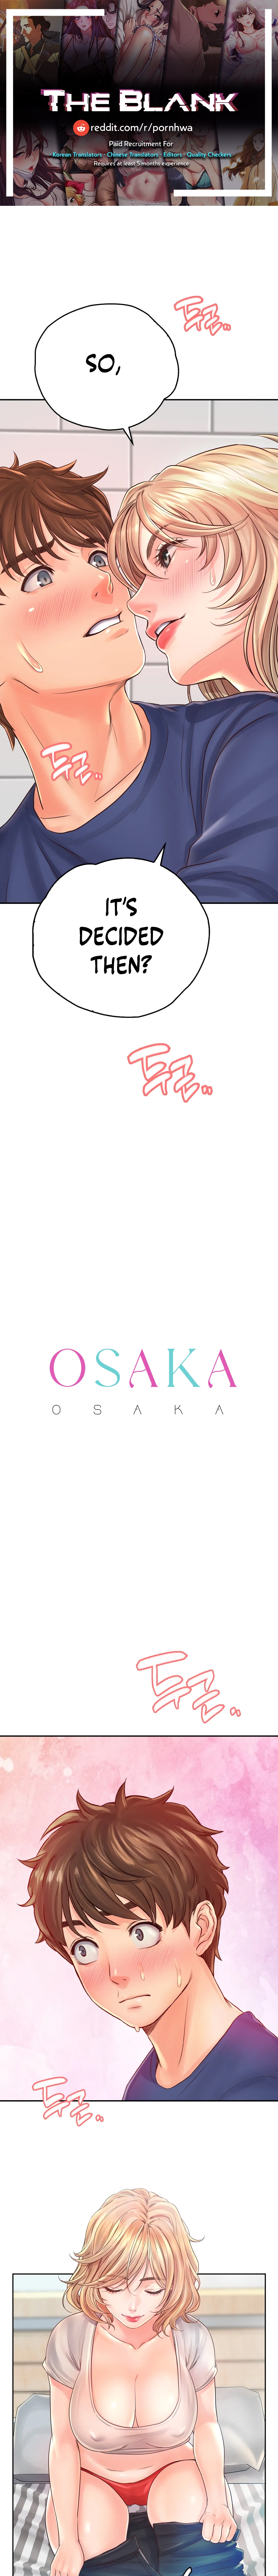 Osaka NEW image